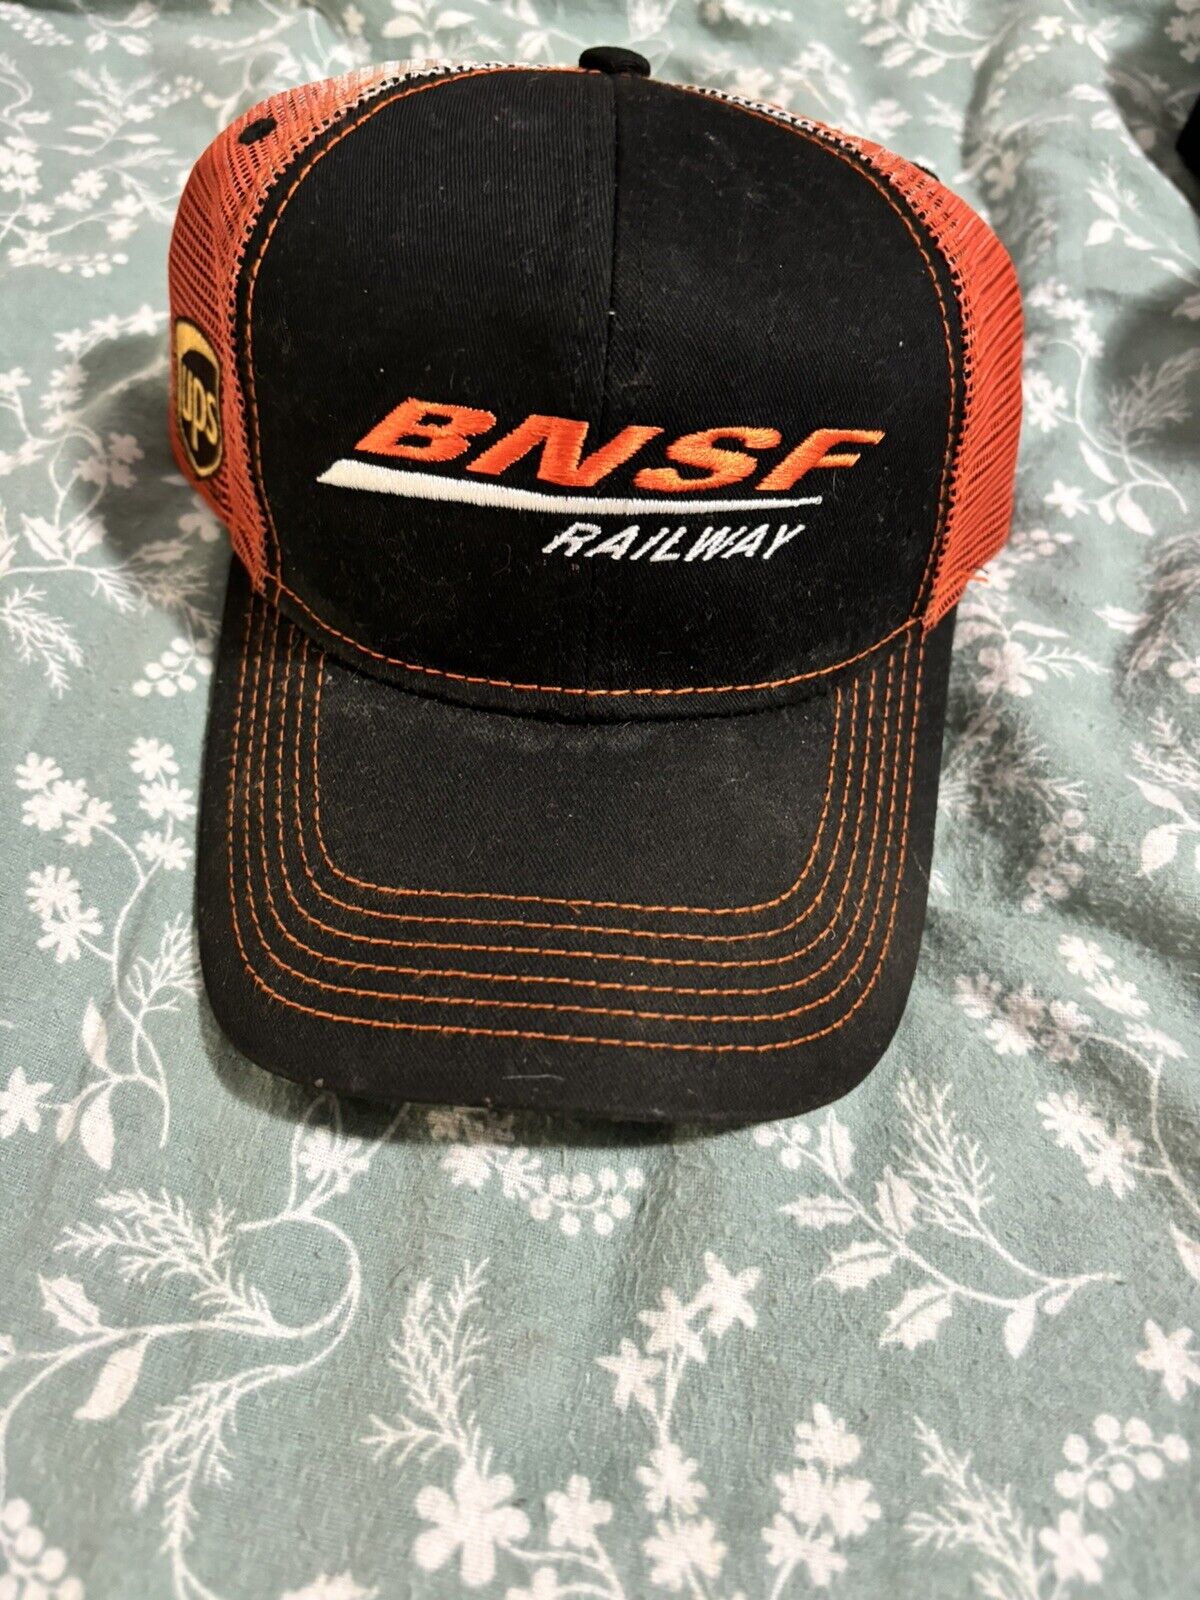 Bnsf Railway Hat.